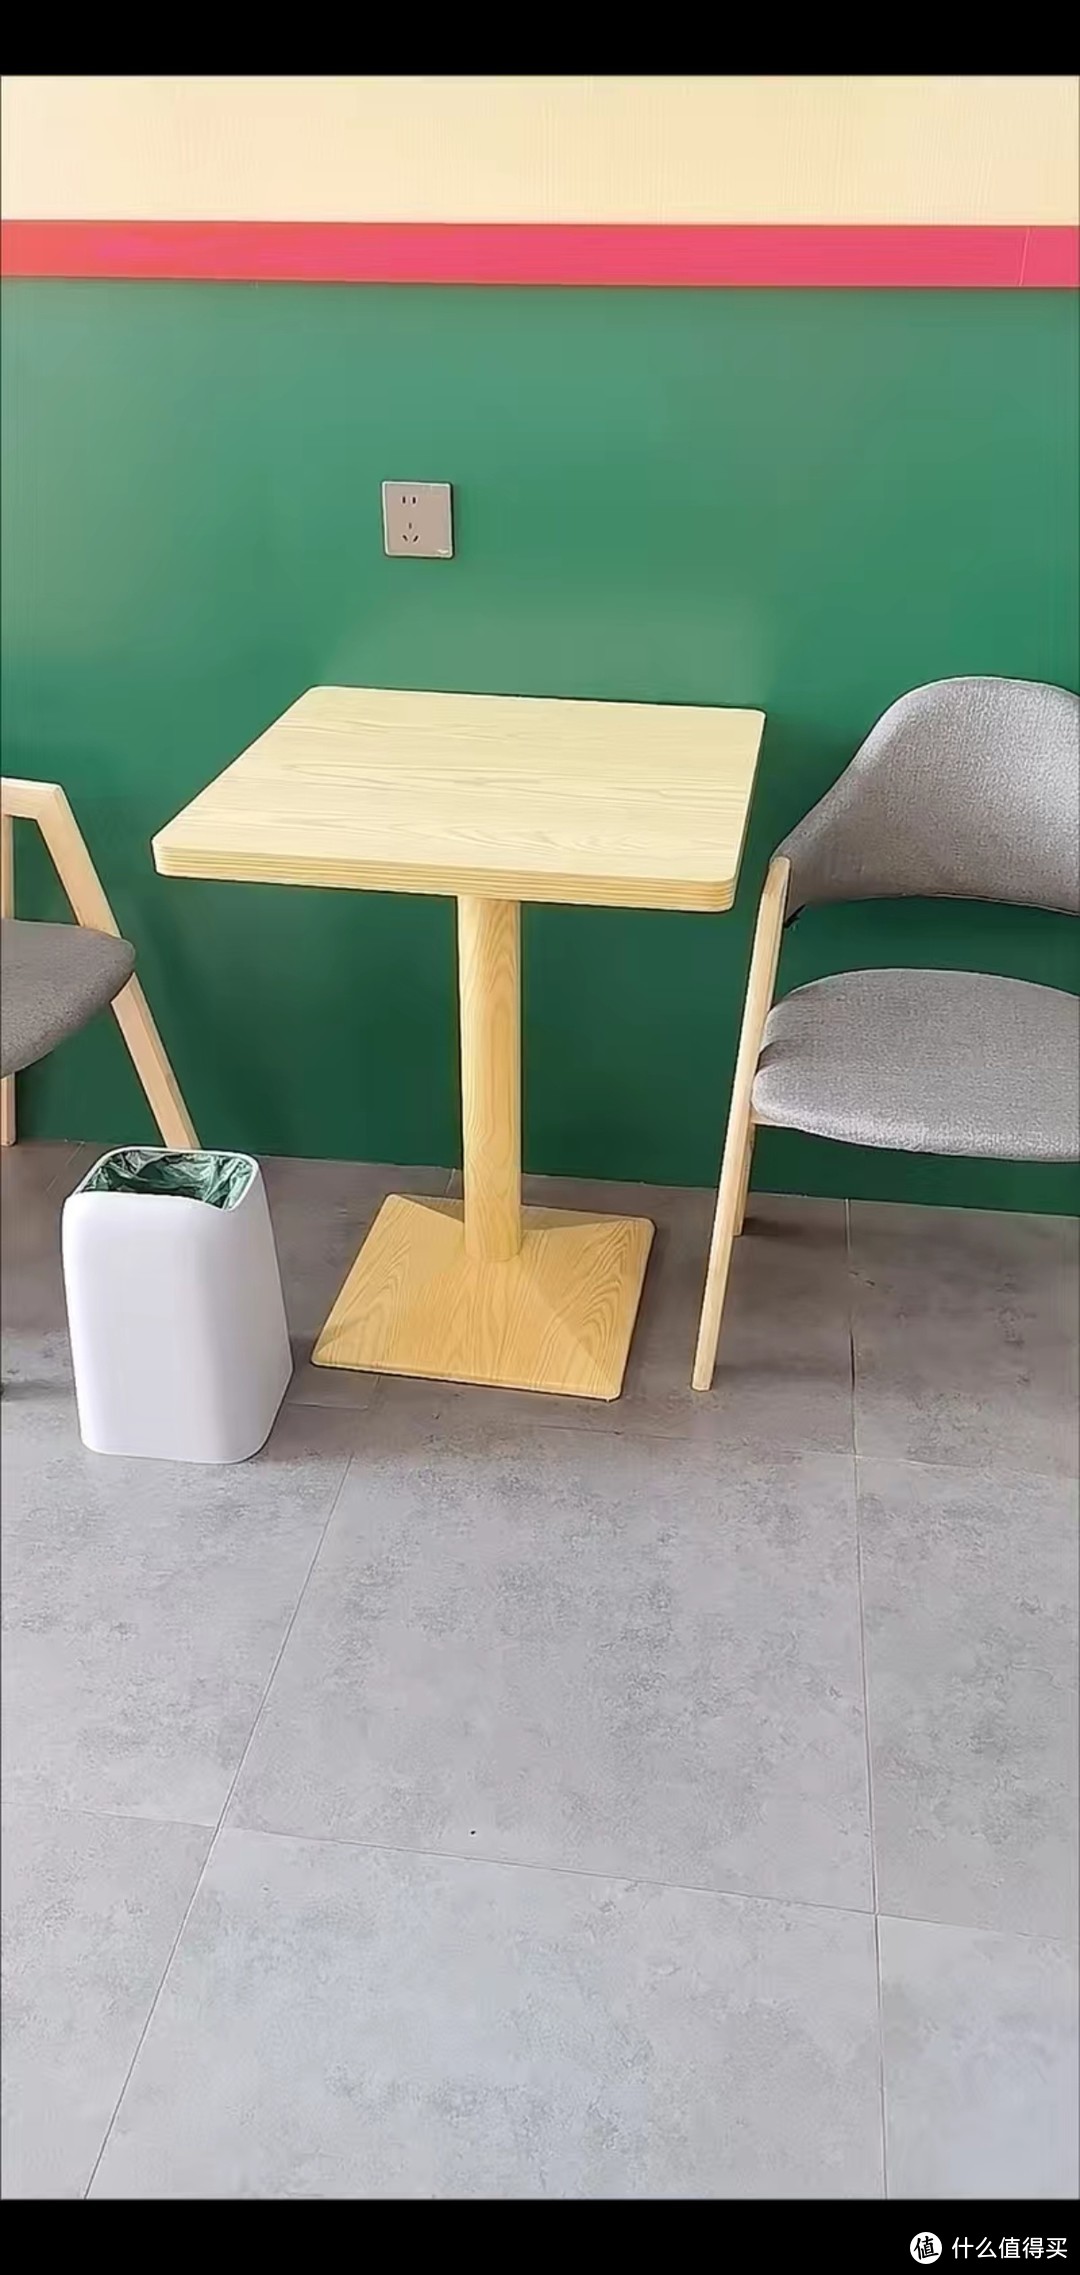 圆形小桌子：钢制底座，干净整洁，结实耐用，为家居增添一抹亮色